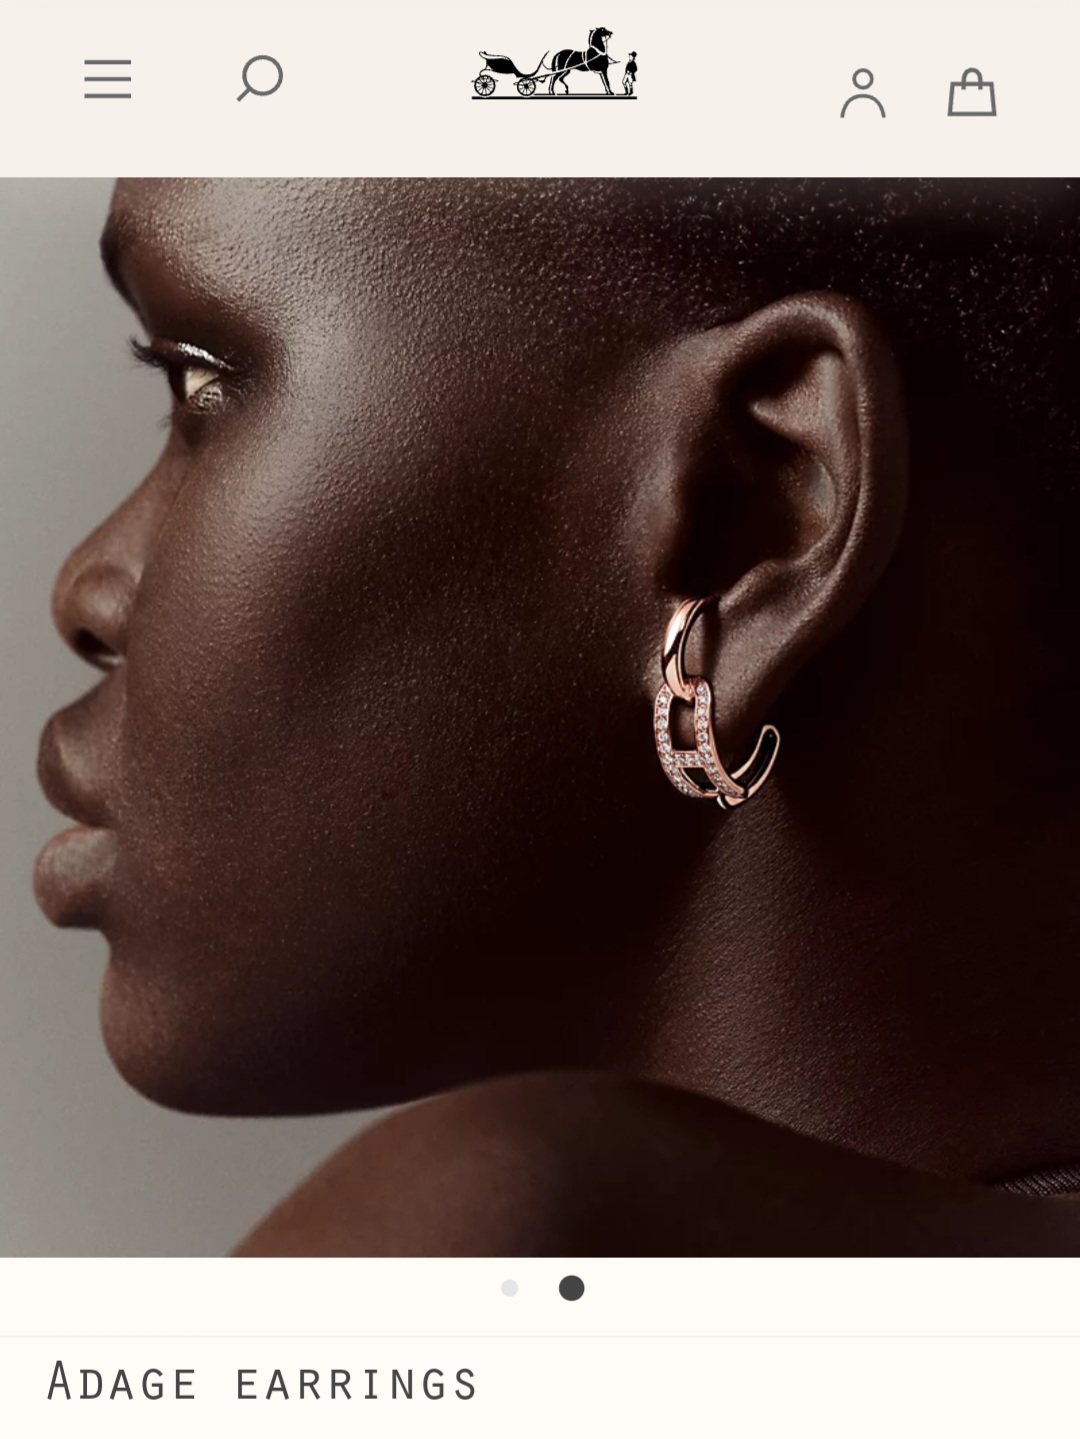 Hermes Adage earrings